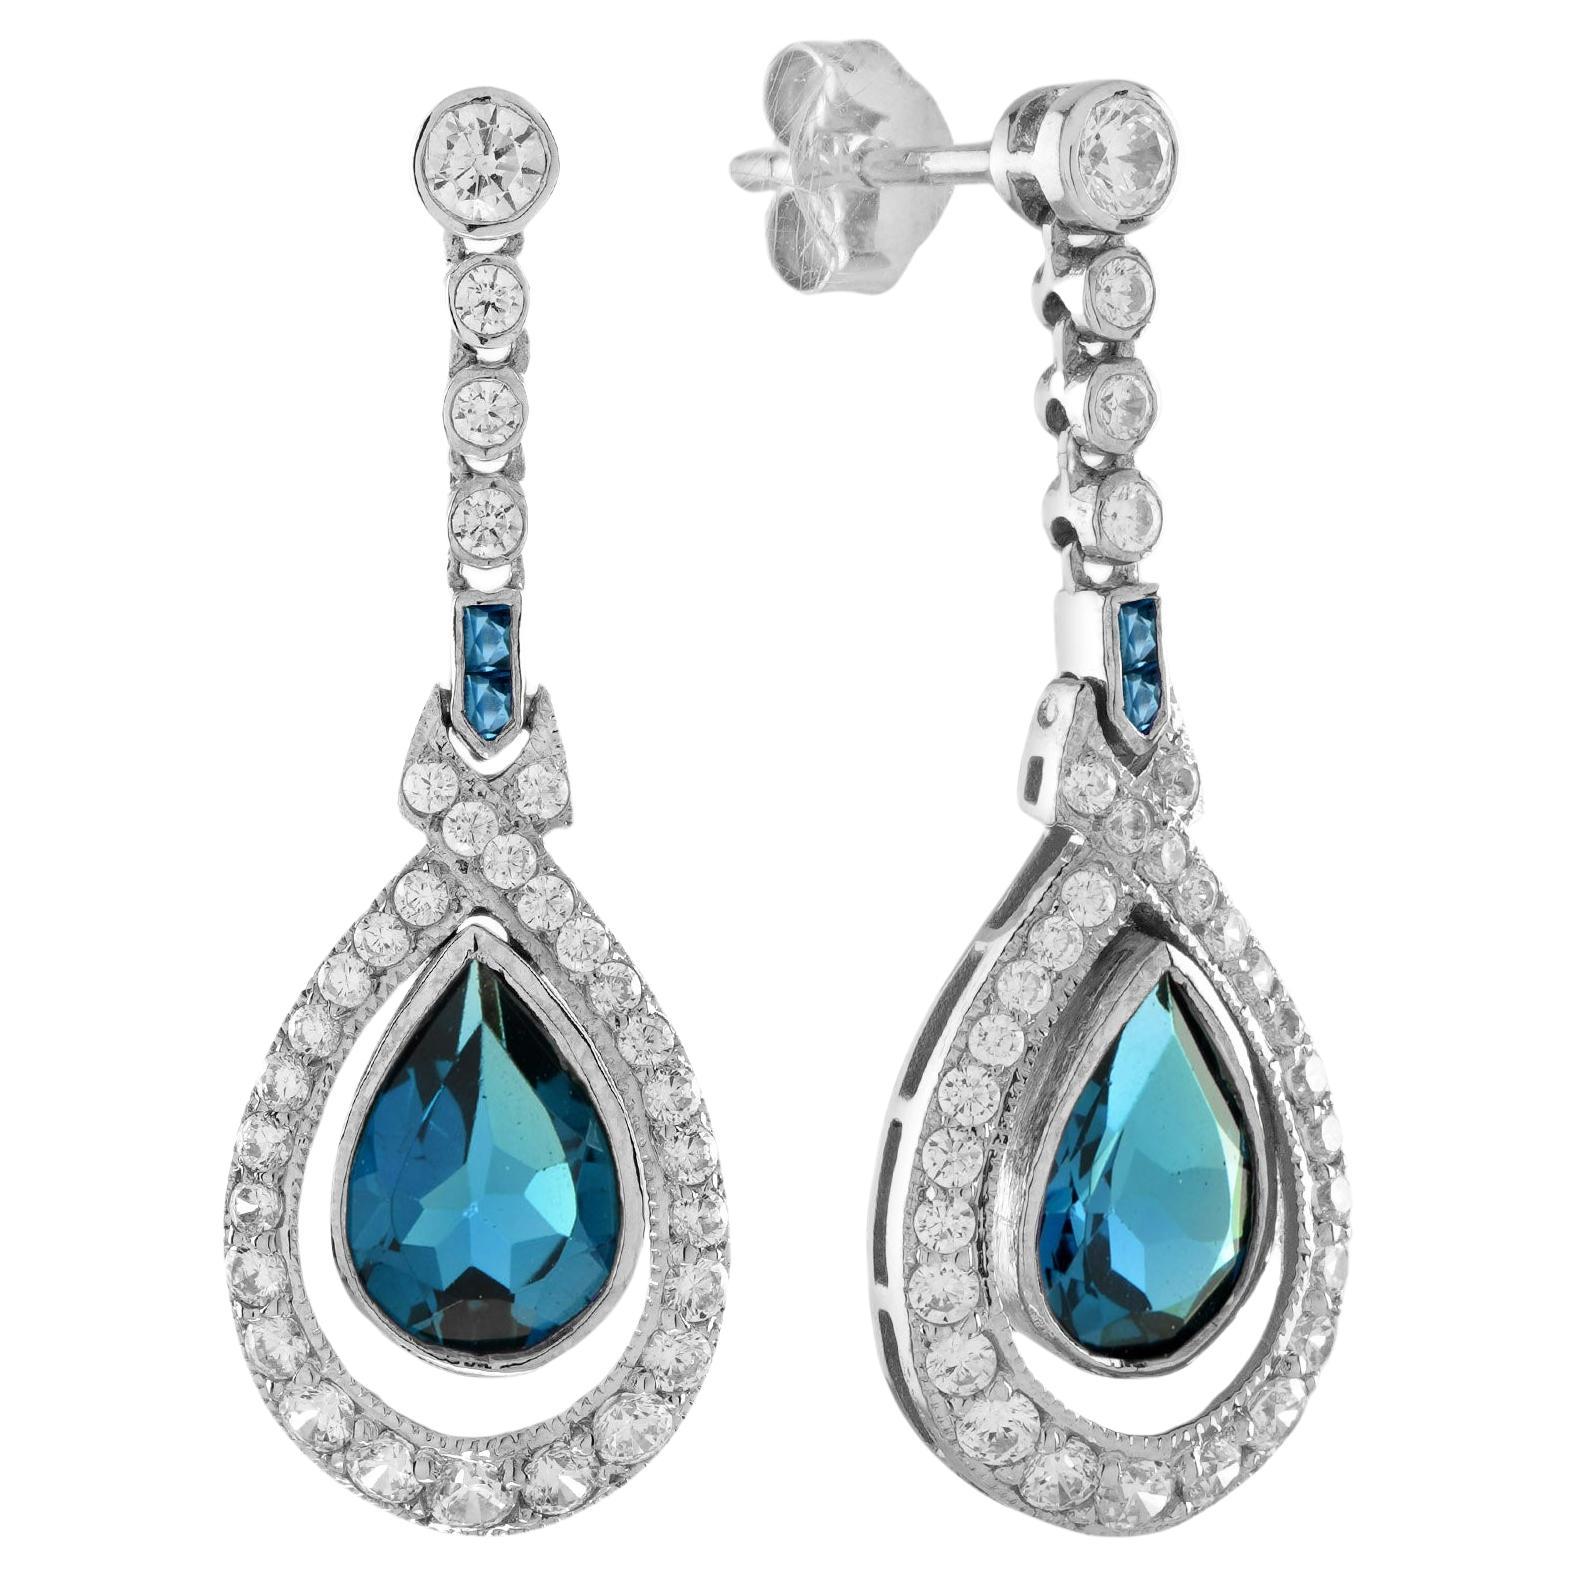 ANTIQUES OF LONDON - Boucles d'oreilles pendantes en or blanc 18 carats avec topaze bleue et diamant de style antique